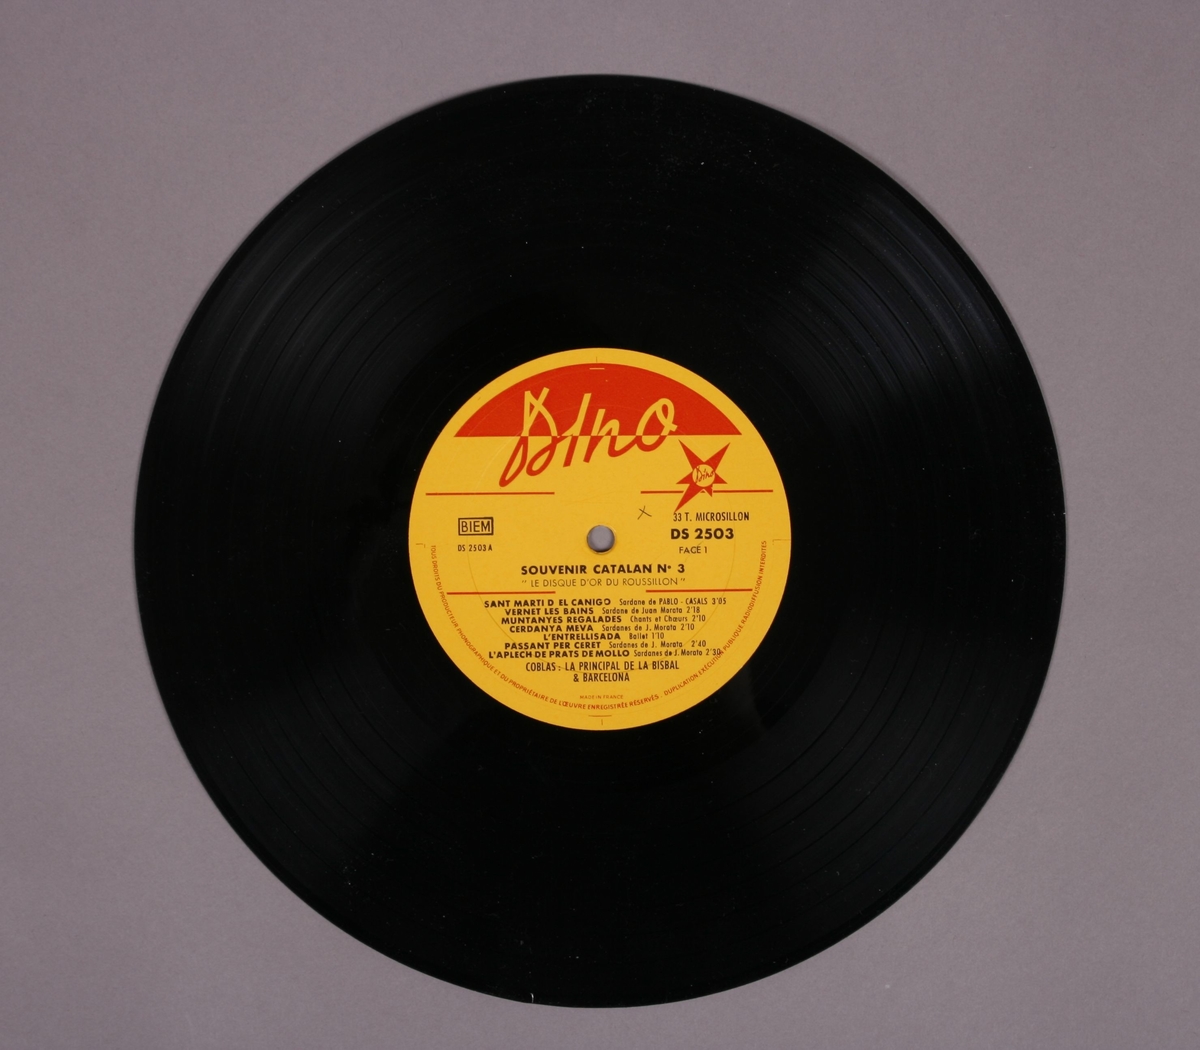 Grammofonplate i svart vinyl med plateomslag. Plateomslag er kombinert med hefte (se bilde).